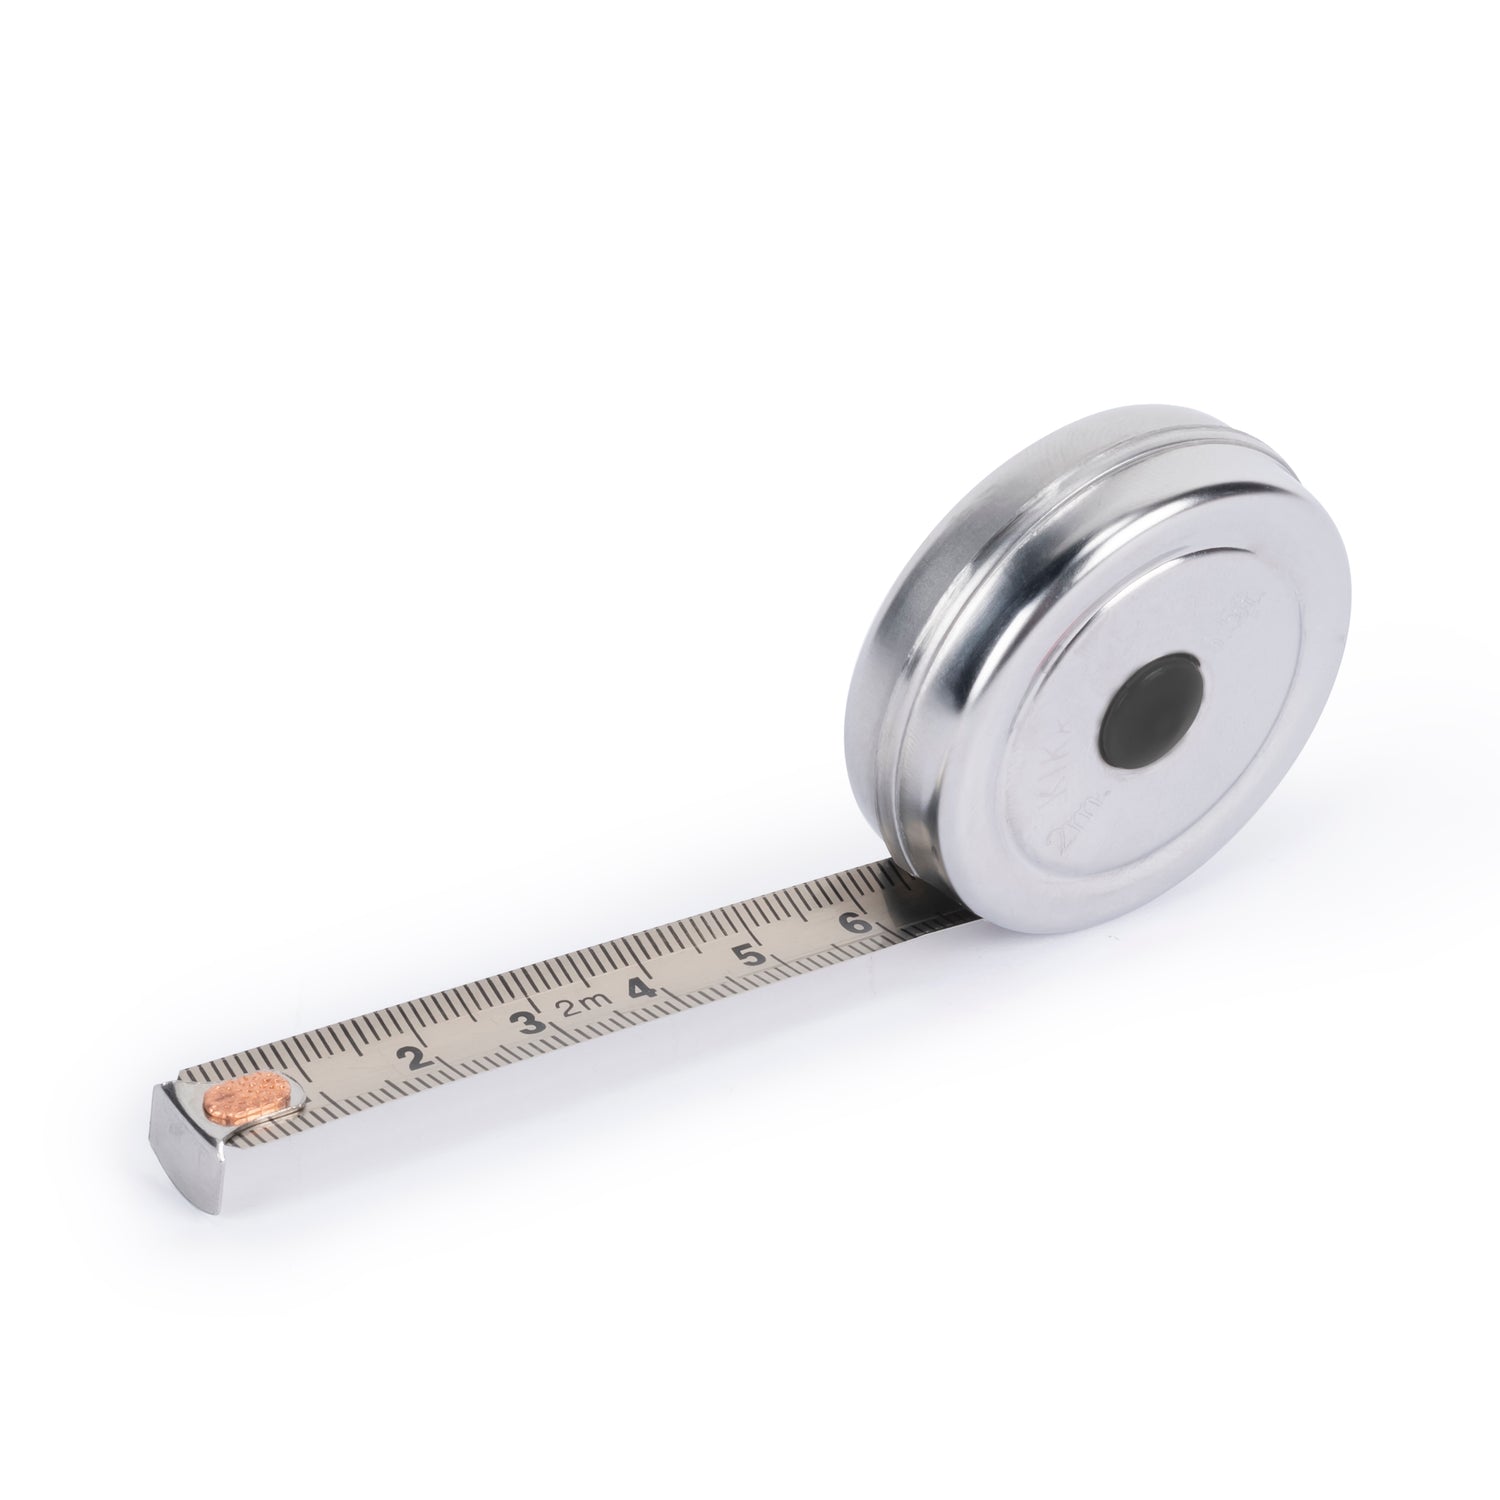  Mini Grip Tape Measure 104019